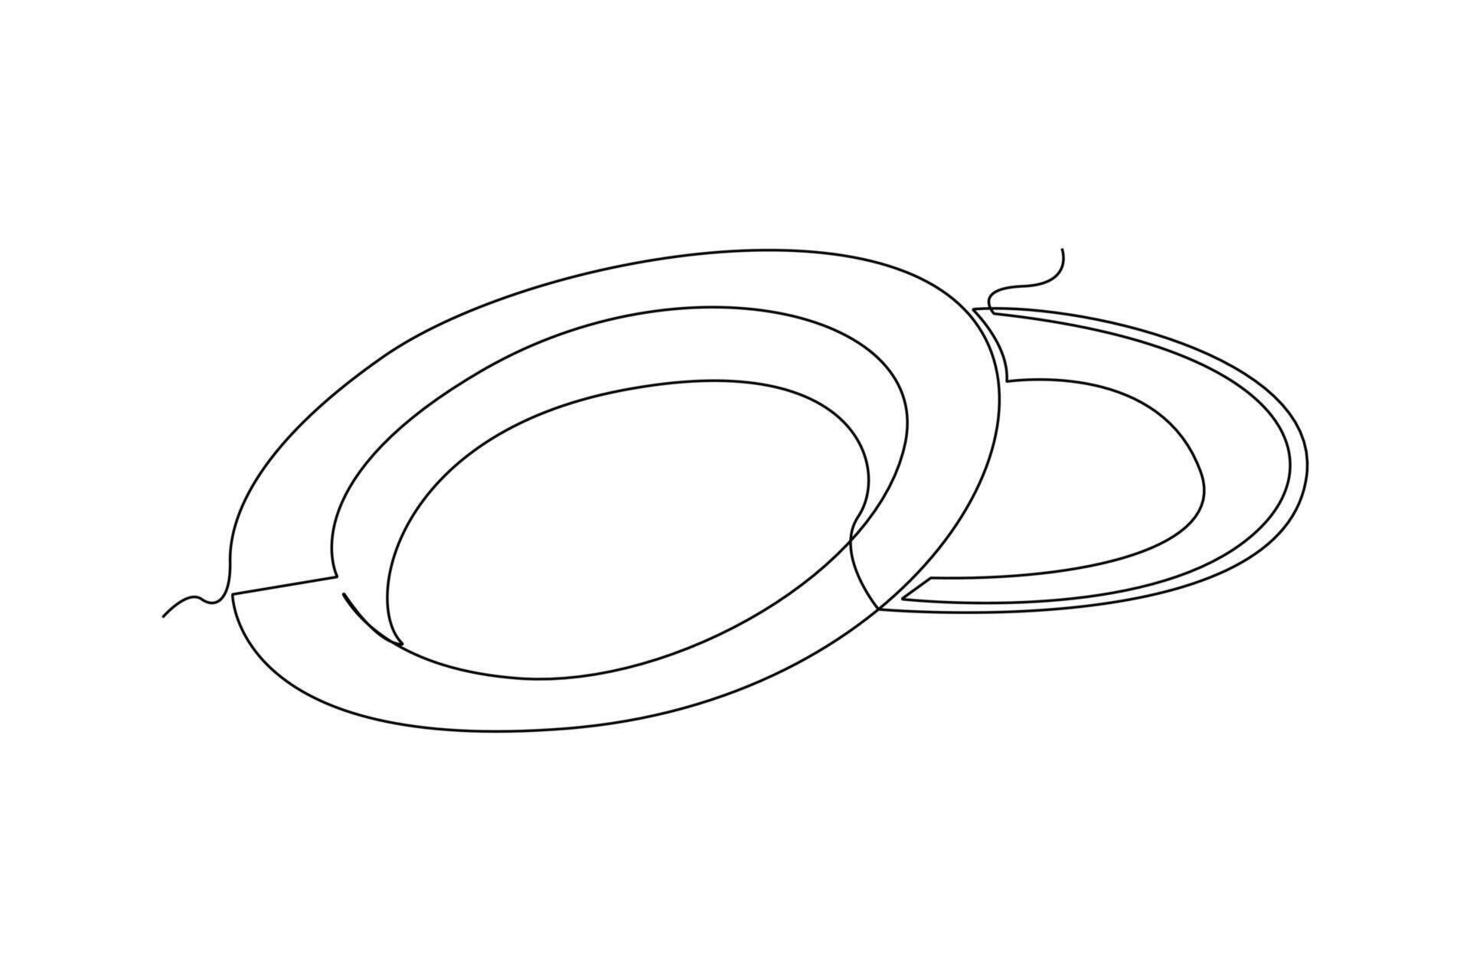 ett kontinuerlig linje teckning av råna och tallrik begrepp. klotter vektor illustration i enkel linjär stil.